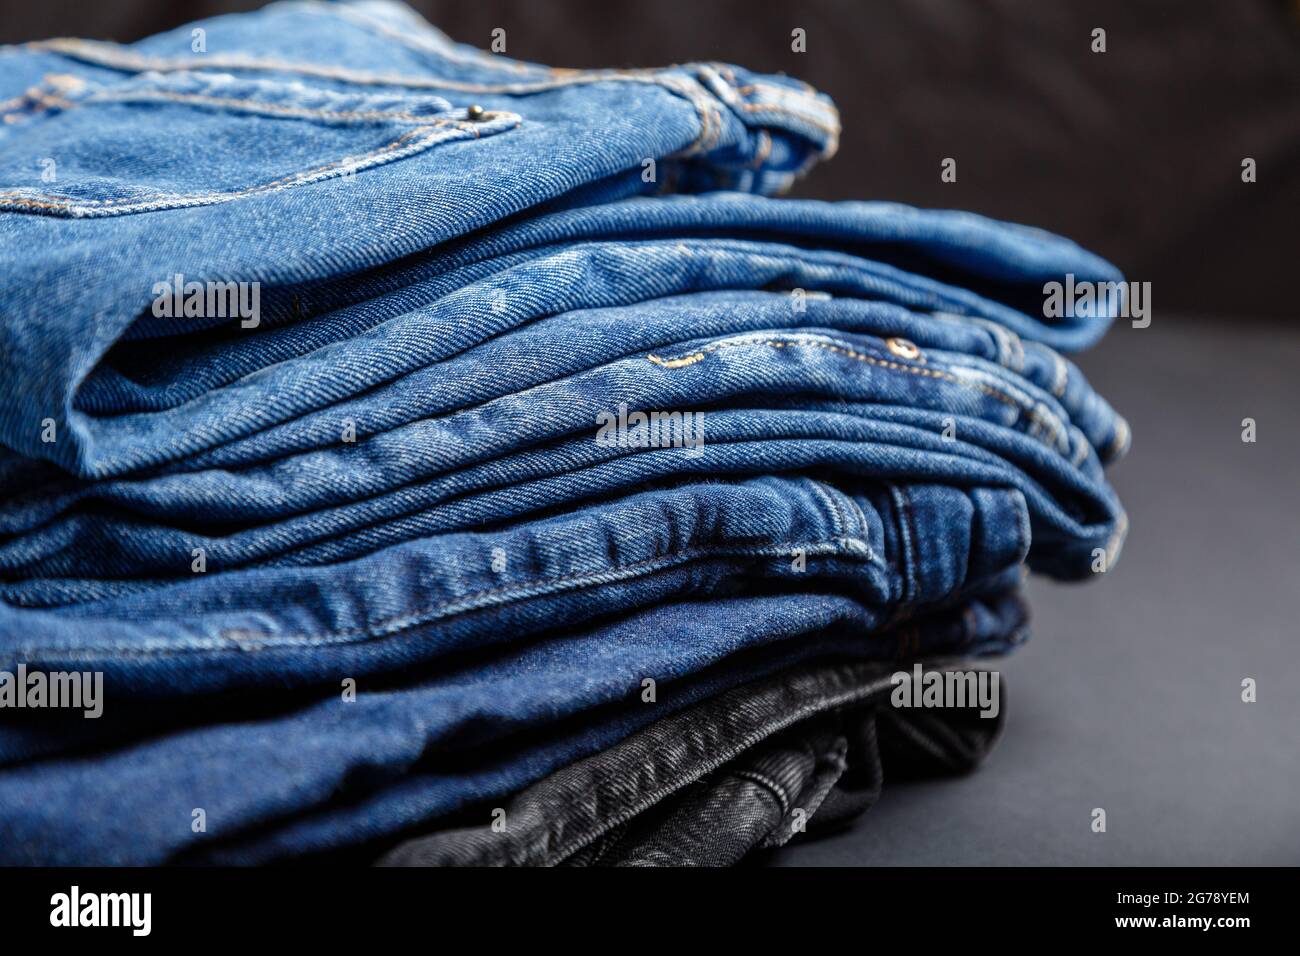 Blaue Jeans Hose Stapel Textil Textur Stoff Hintergrund. Stapel von  verschiedenen blauen Farbe Jeans, Denim jean Textilien auf schwarzem  Hintergrund Stockfotografie - Alamy